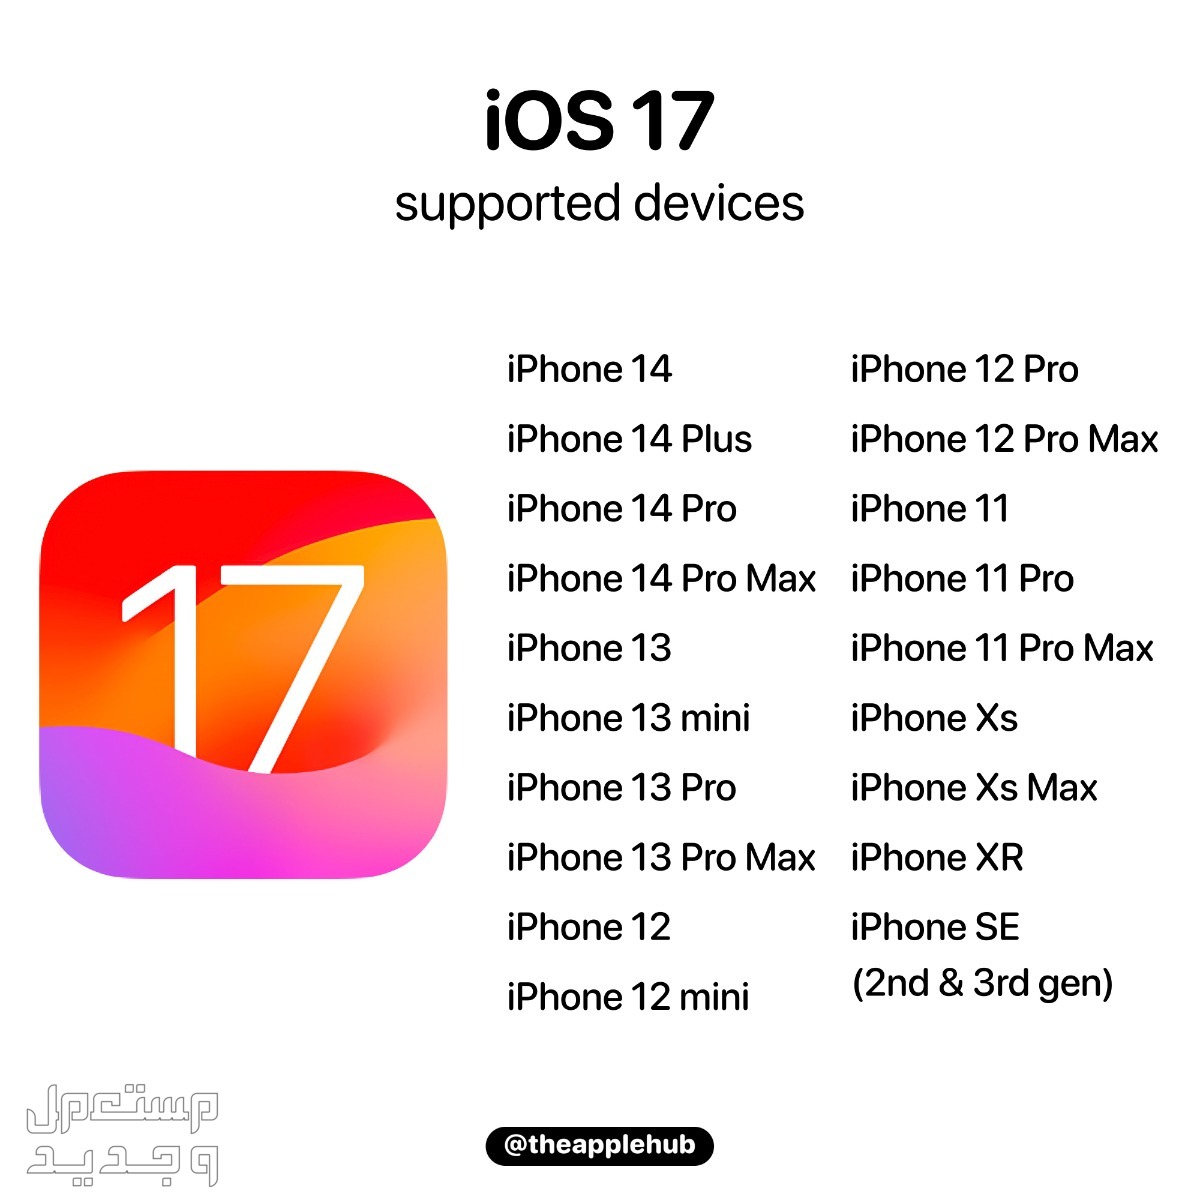 نظام iOS 17 لهواتف ايفون بمميزات جديدة تعرف عليها في الإمارات العربية المتحدة